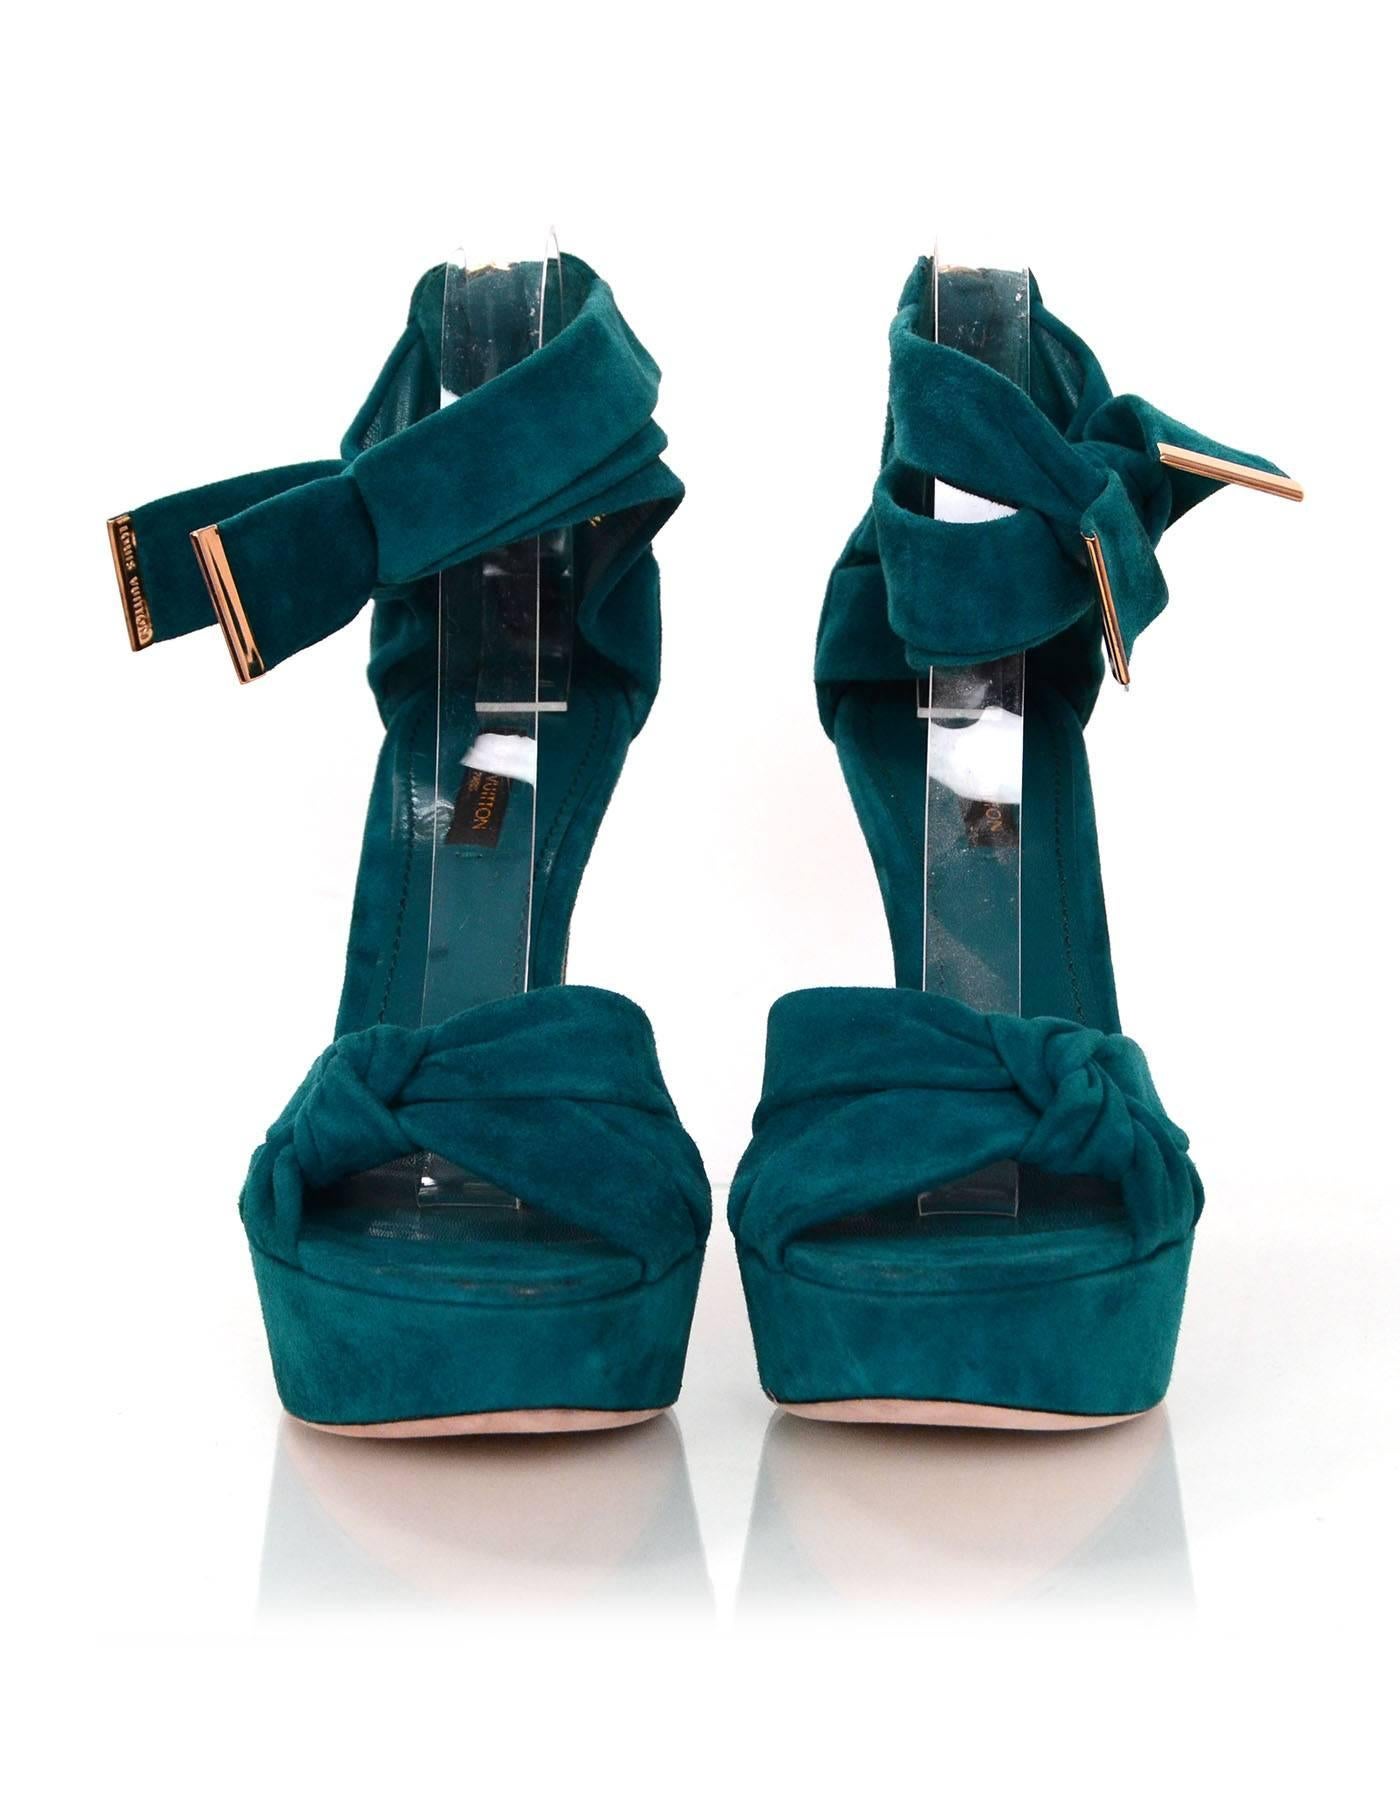 Blue Louis Vuitton Teal Suede Platform Sandals Sz 38